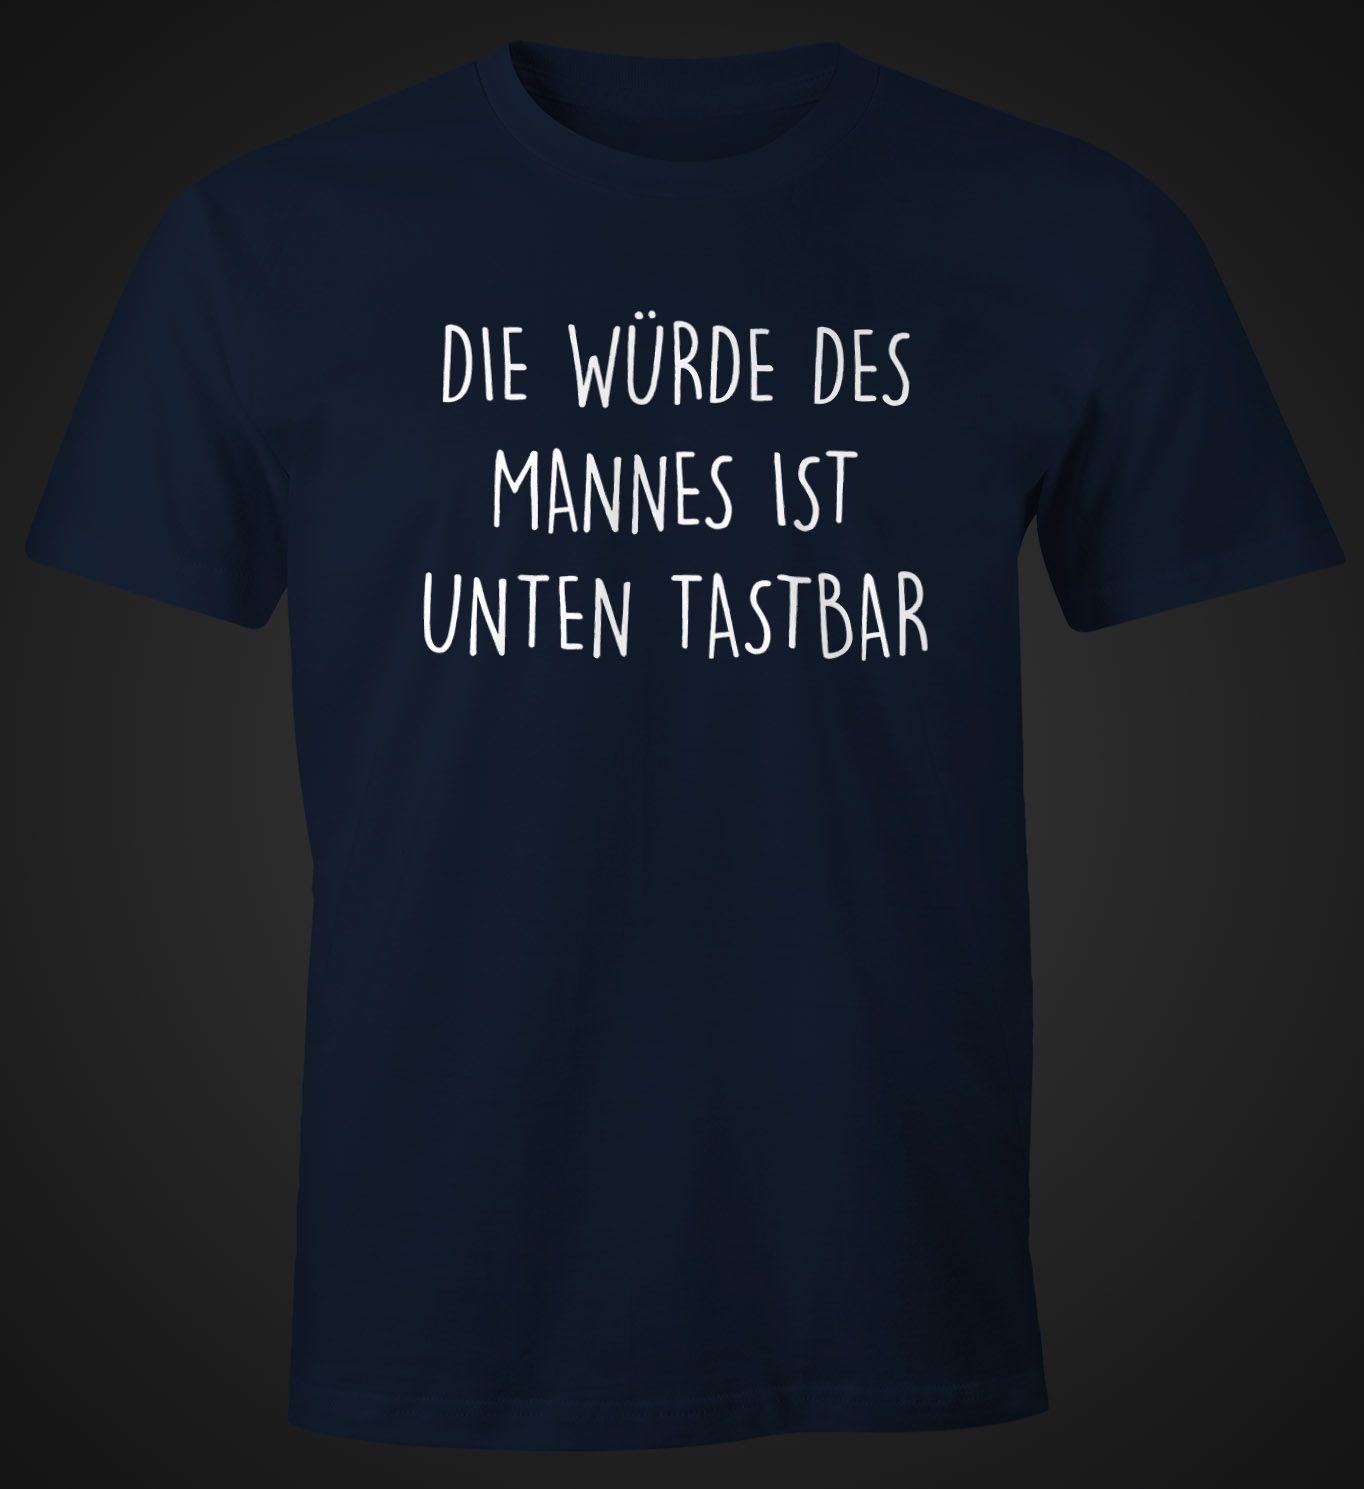 MoonWorks Print-Shirt Lustiges Herren Spruch unten Moonworks® mit Würde ist T-Shirt des Die Fun-Shirt Print navy tastbar Mannes mit